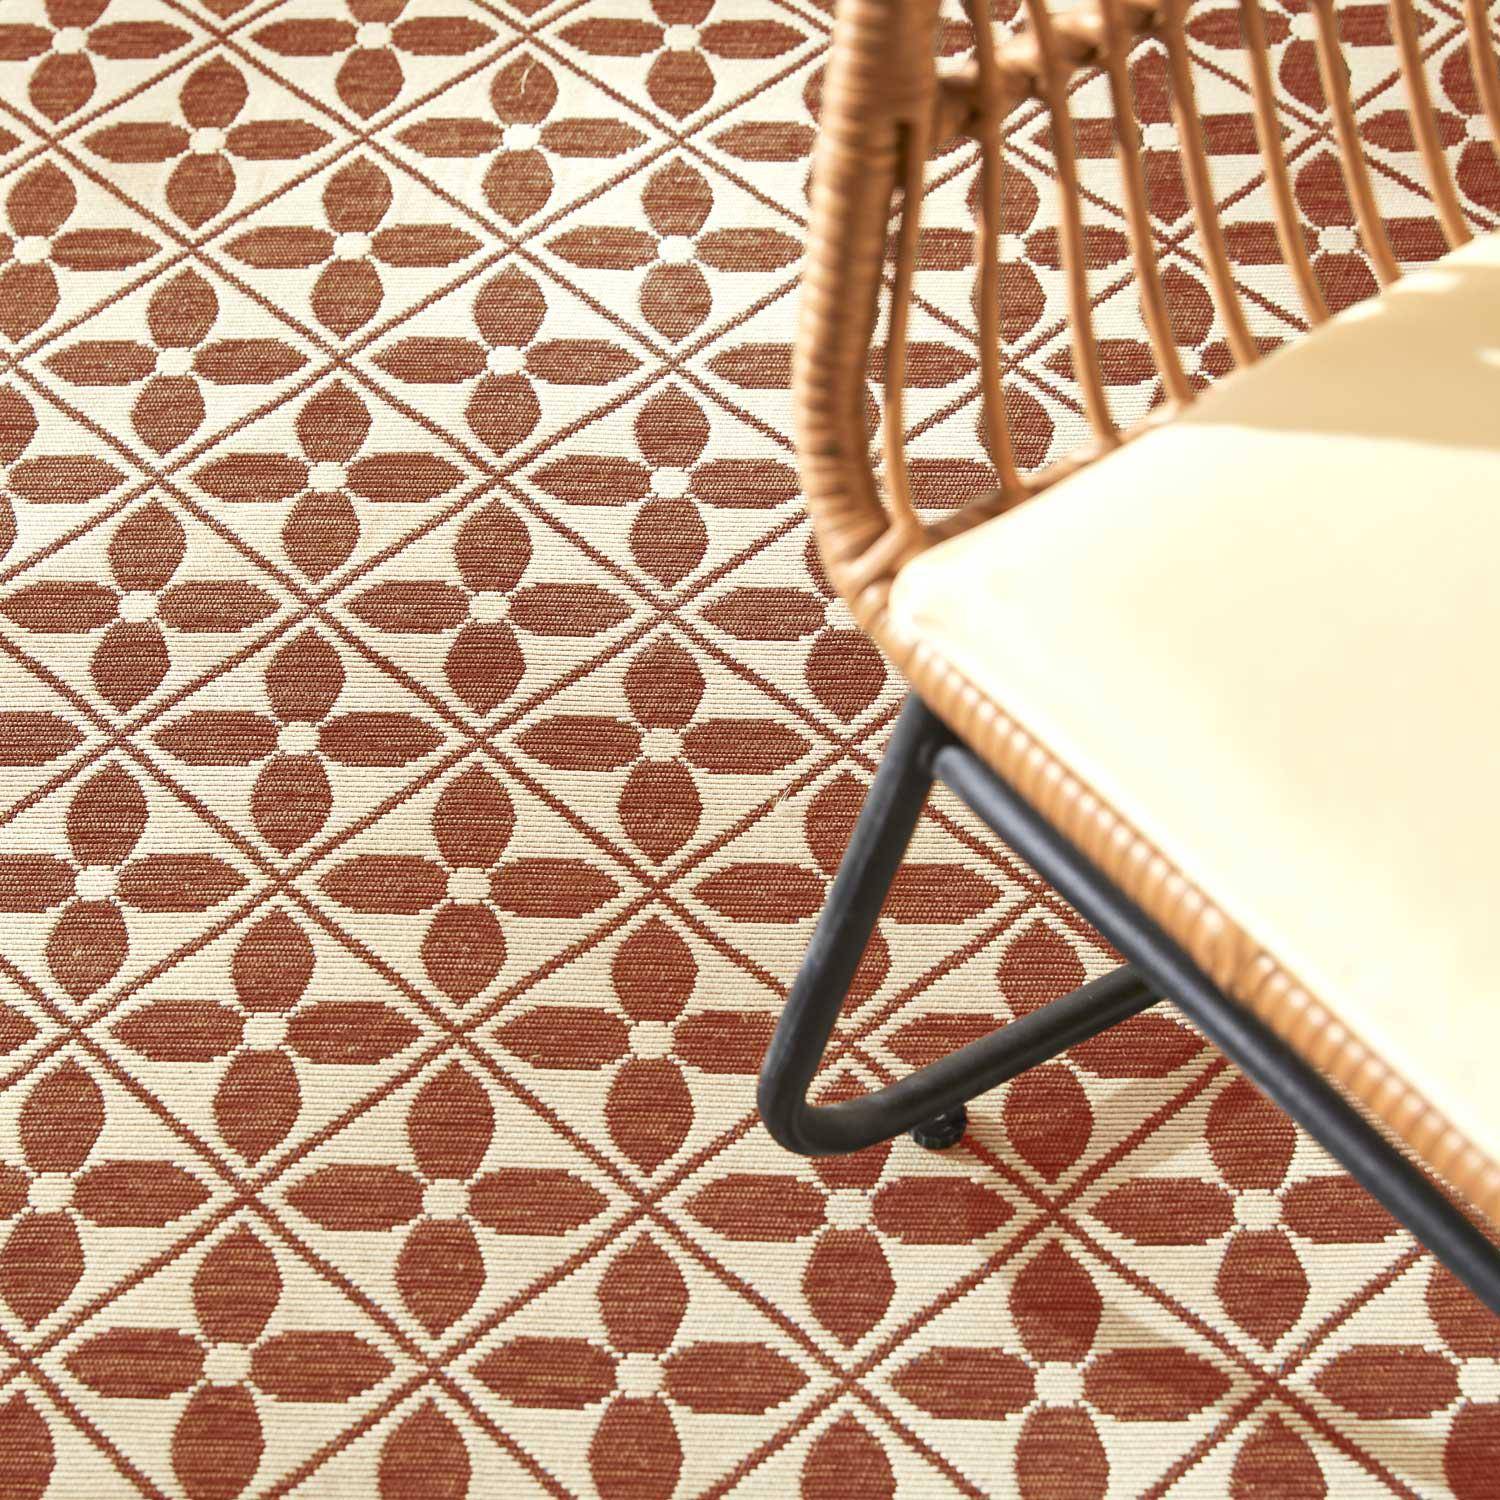 Outdoor rug - 160x230cm - tile print, rectangular, indoor/outdoor use - Terracotta,sweeek,Photo2